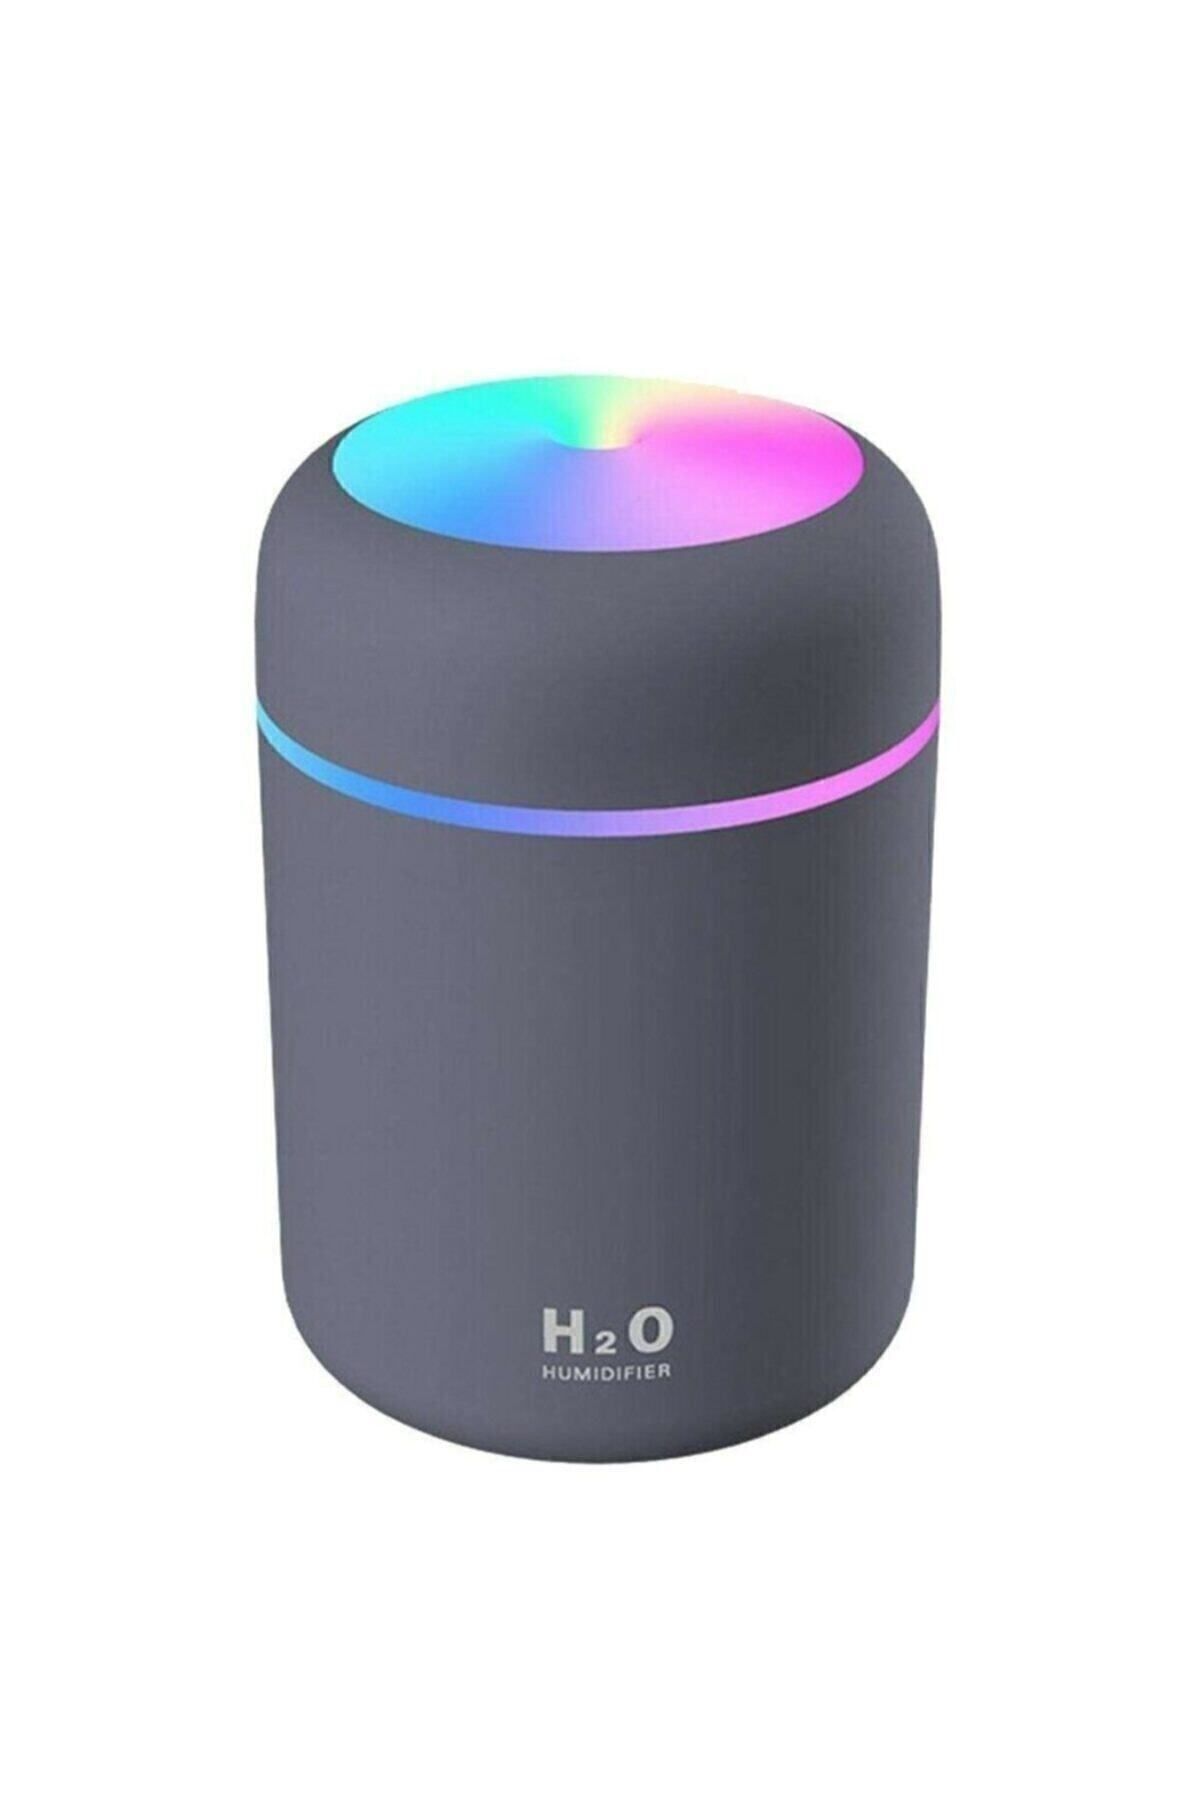 H2O Humidifier 300 ml Ulrasonik Ledli Hava Nemlendirici Buhar Makinesi Ve Aroma Difüzörü Beyaz